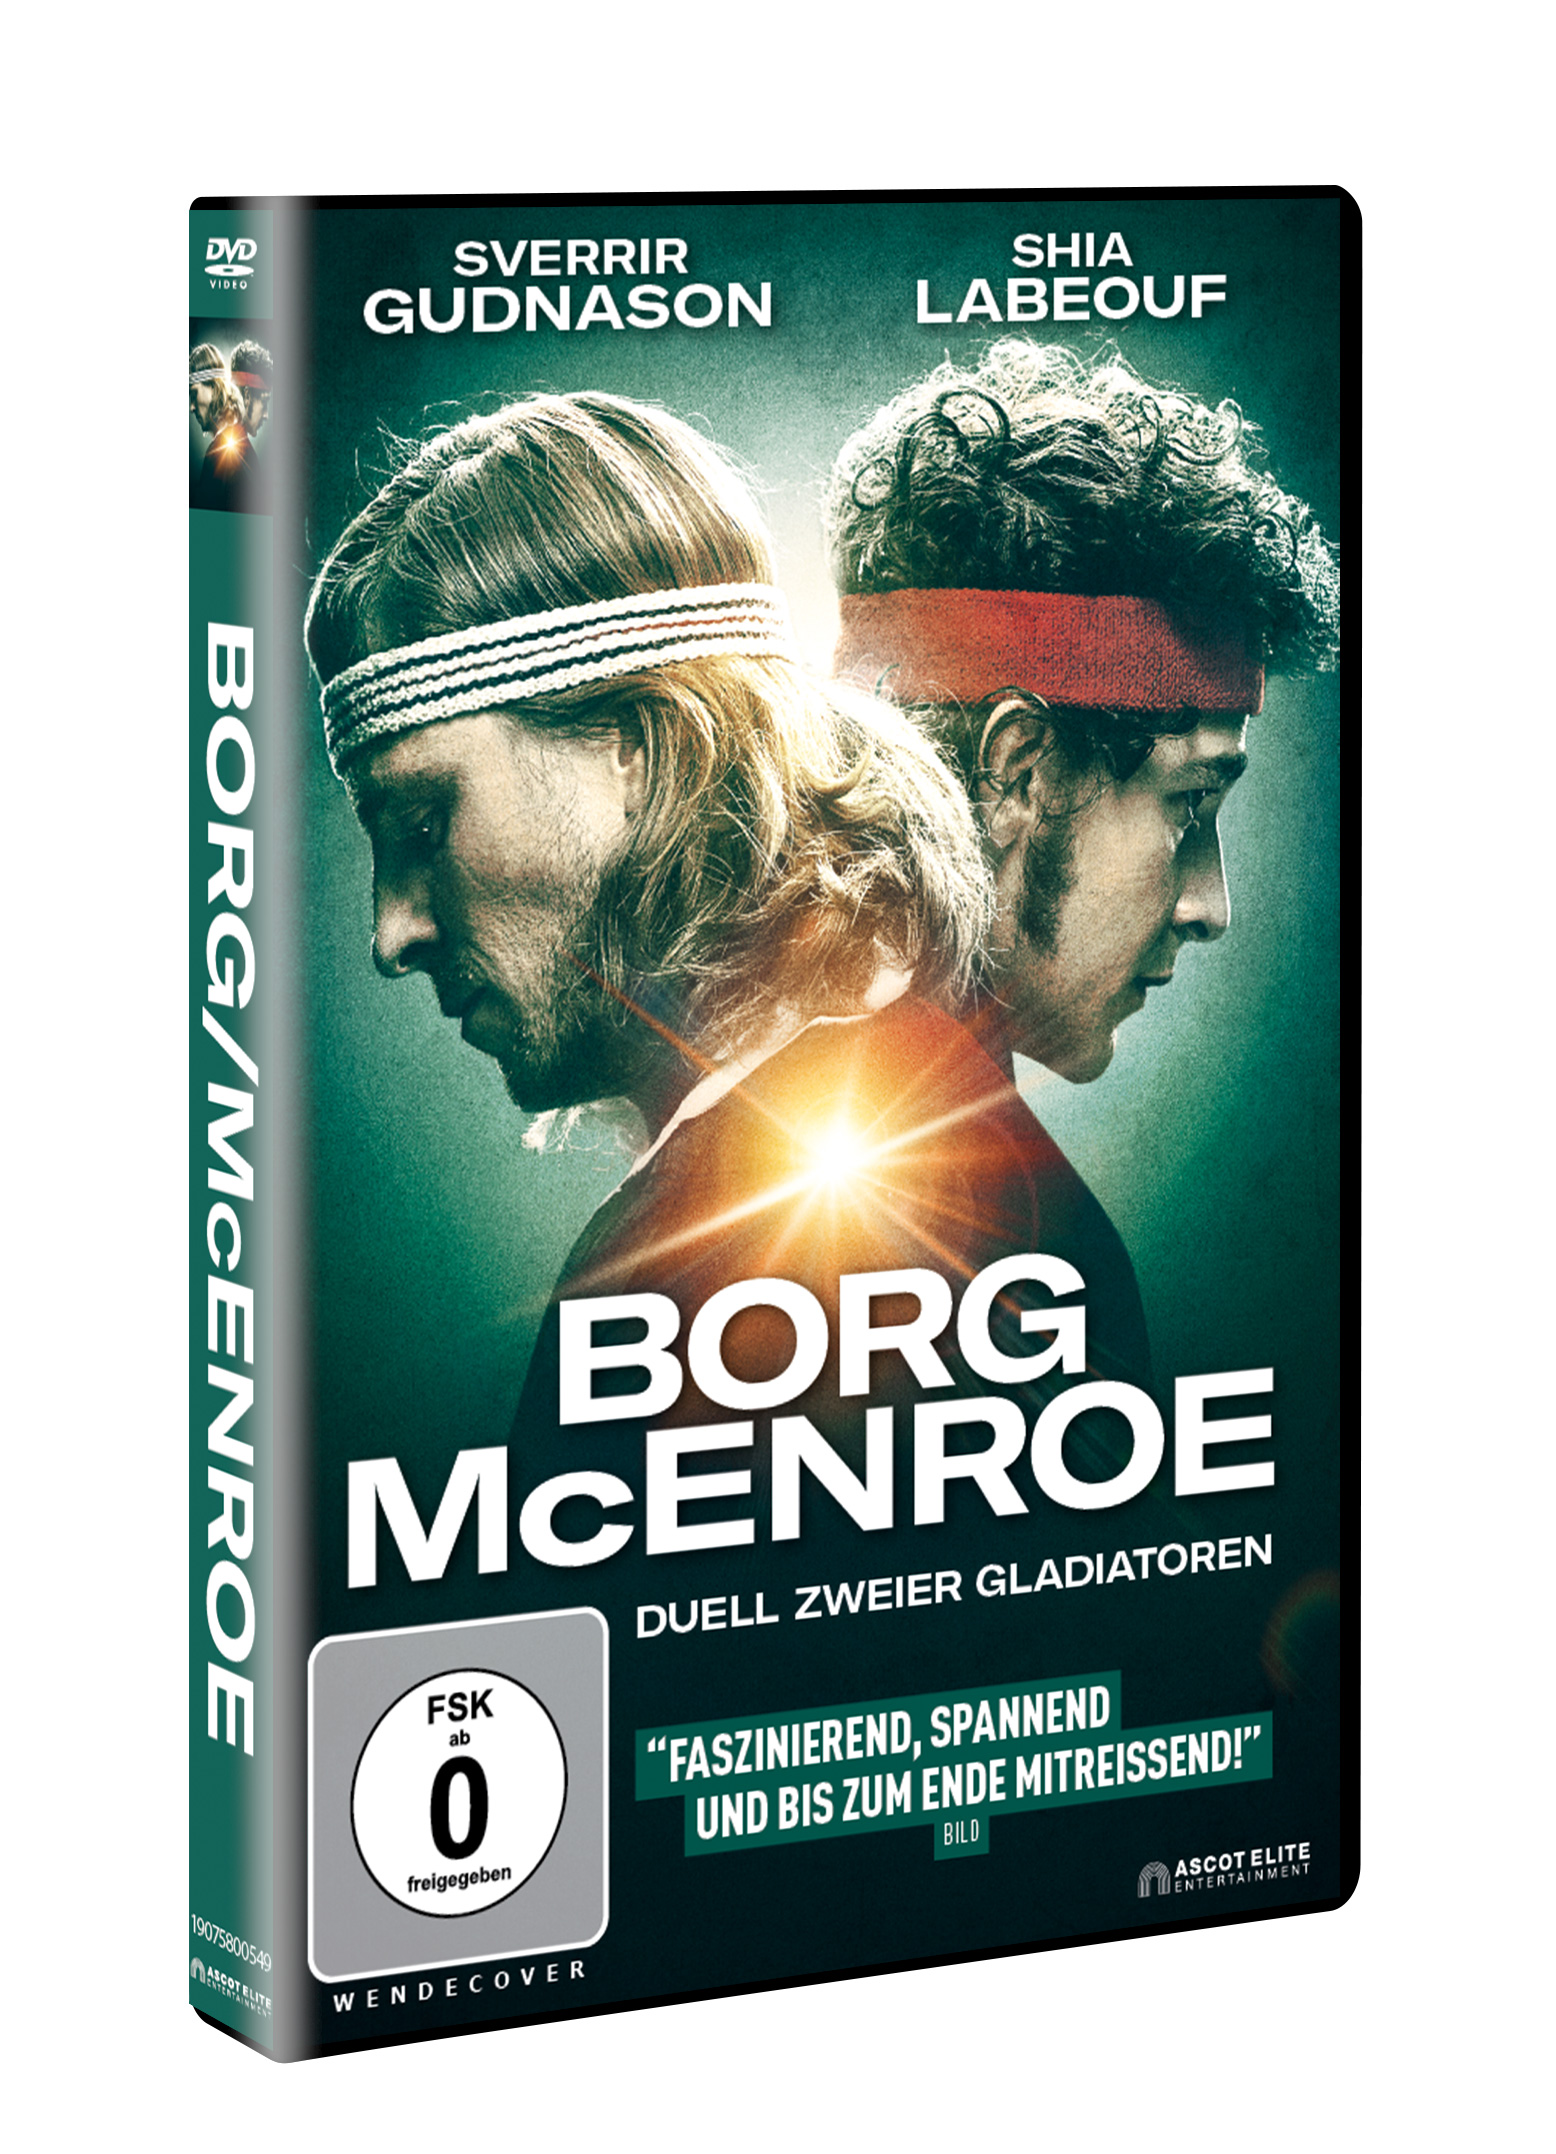 DVD Gladiatoren vs. McEnroe Borg zweier Duell -